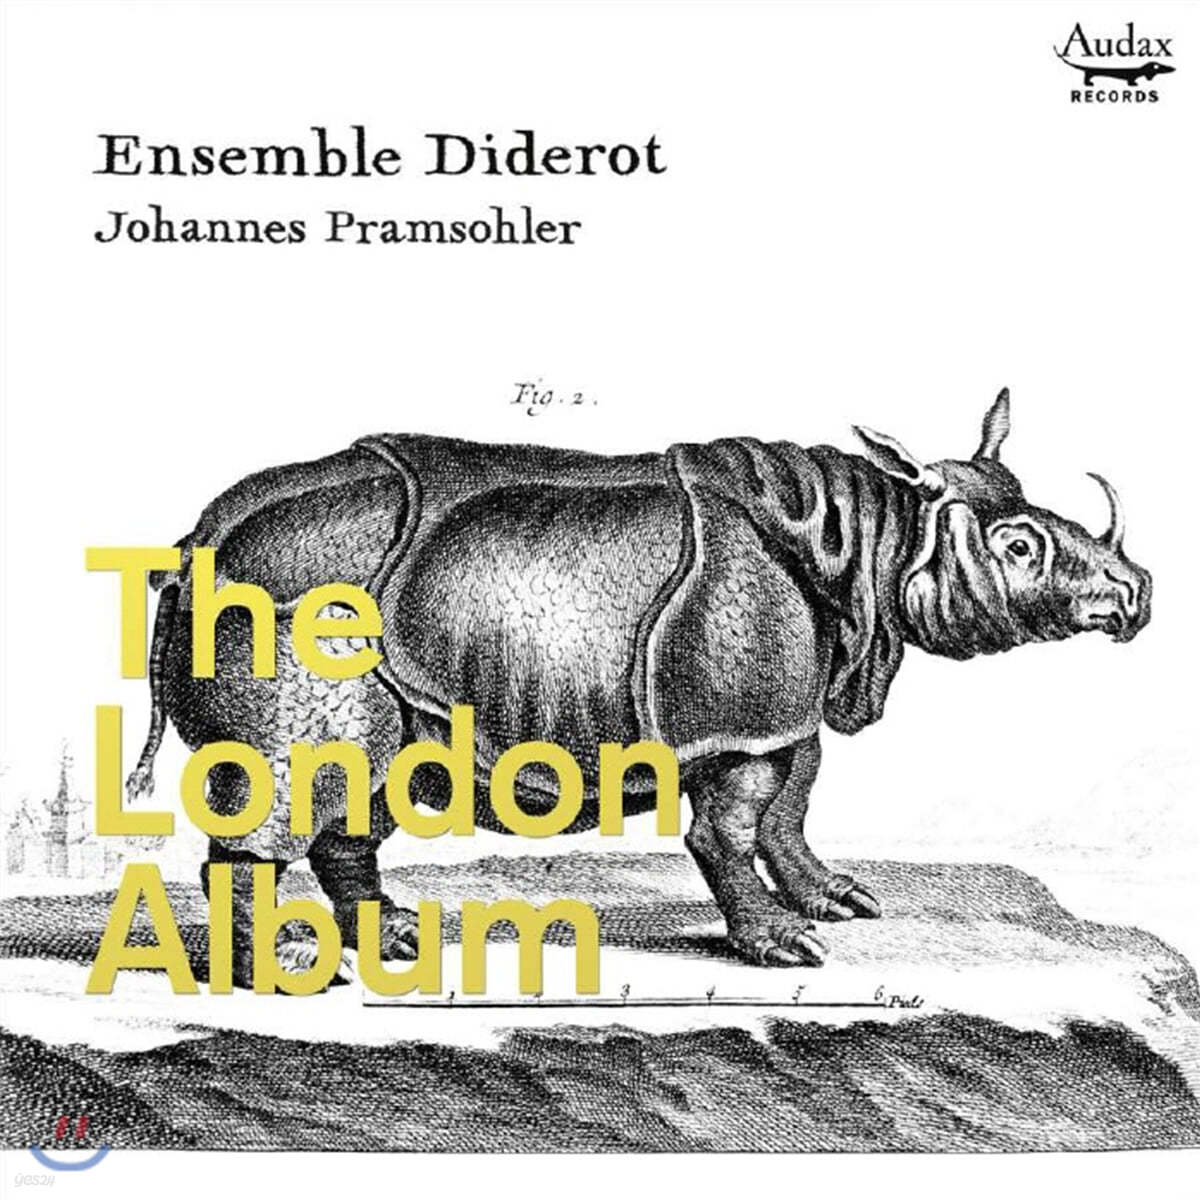 Johannes Pramsohler 런던 앨범 - 초기 잉글랜드의 트리오 소나타집 (The London Album)